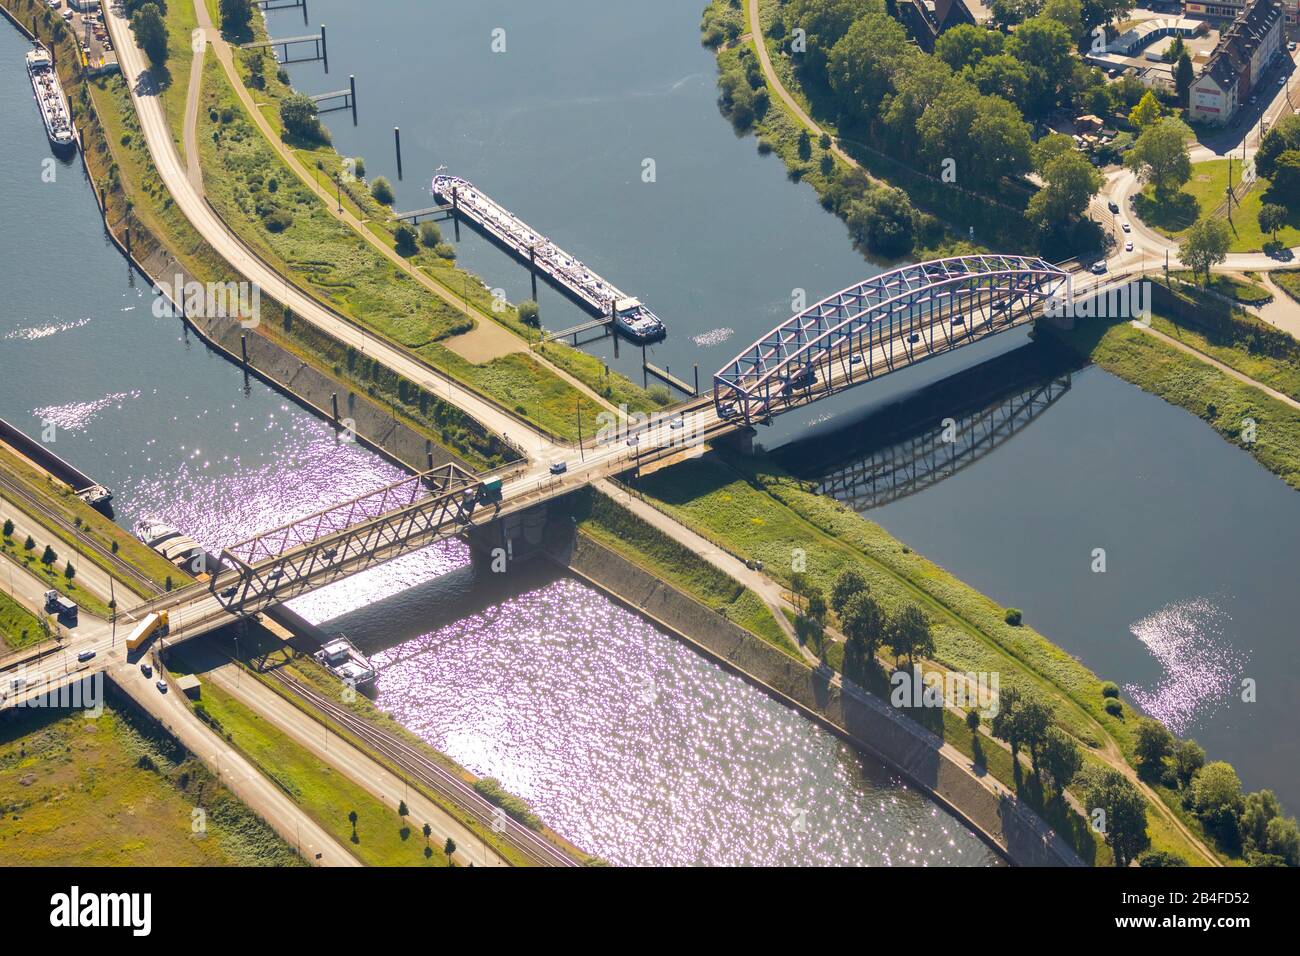 Luftbild der Ruhrbrücke Ruhrorter Straße mit Schiffsinsel in der Duisburg Port Duisport AG an der Ruhrgebiet mit Ruhrmünze am Rhein in Übersicht und Details in Ruhrort in Duisburg im Ruhrgebiet im Land Nordrhein-Westfalen in Deutschland. Stockfoto